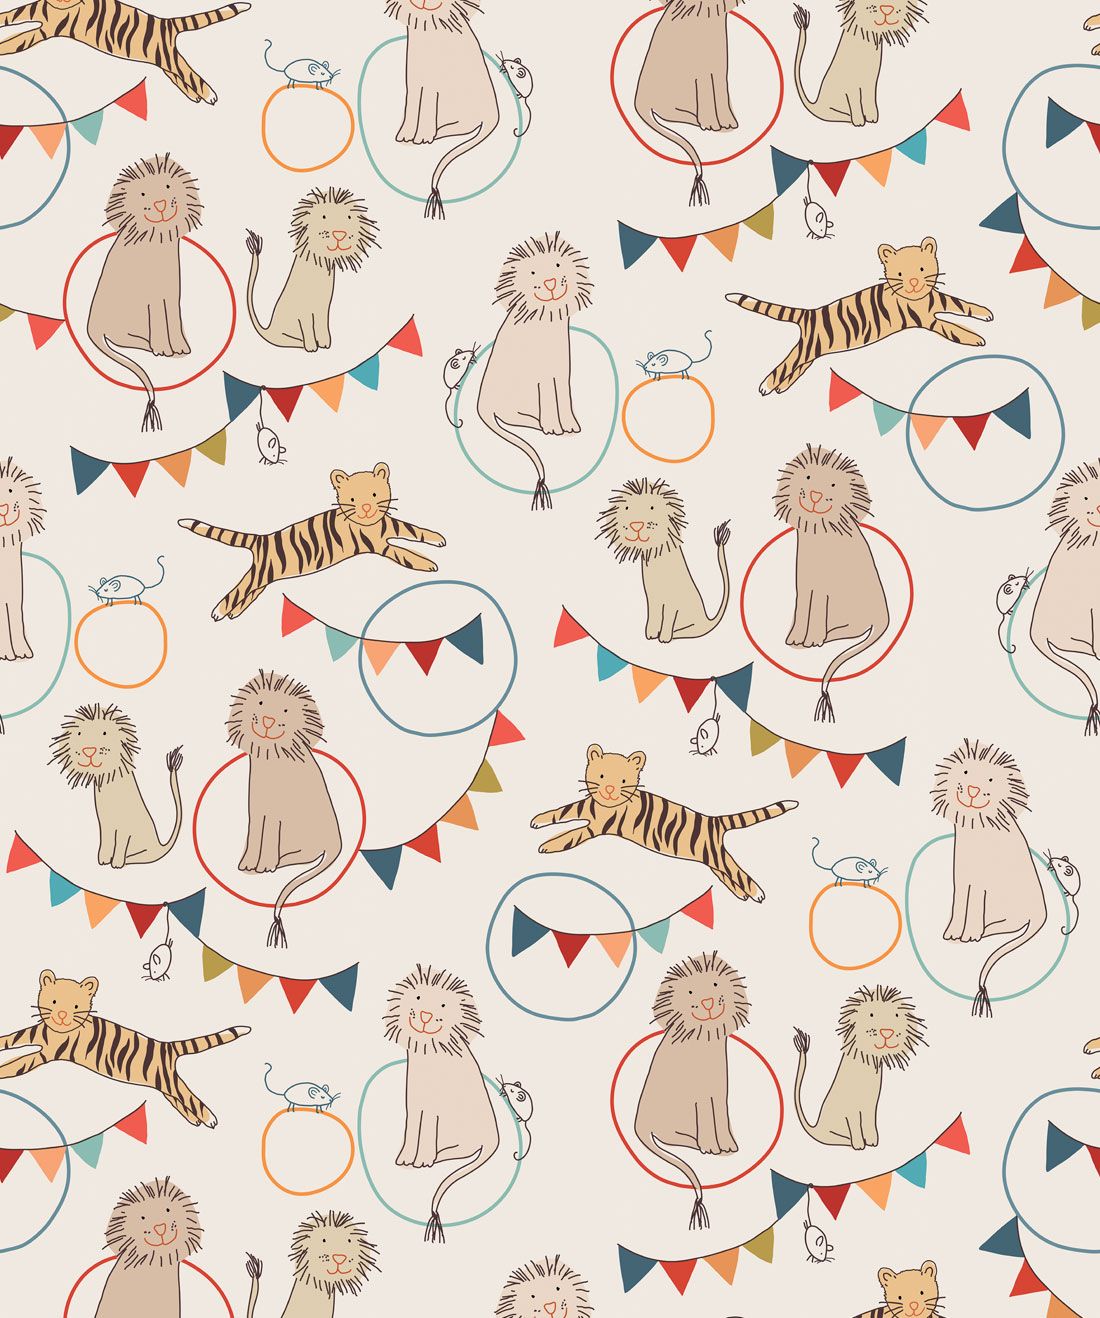 Lions & Tigers Wallpaper